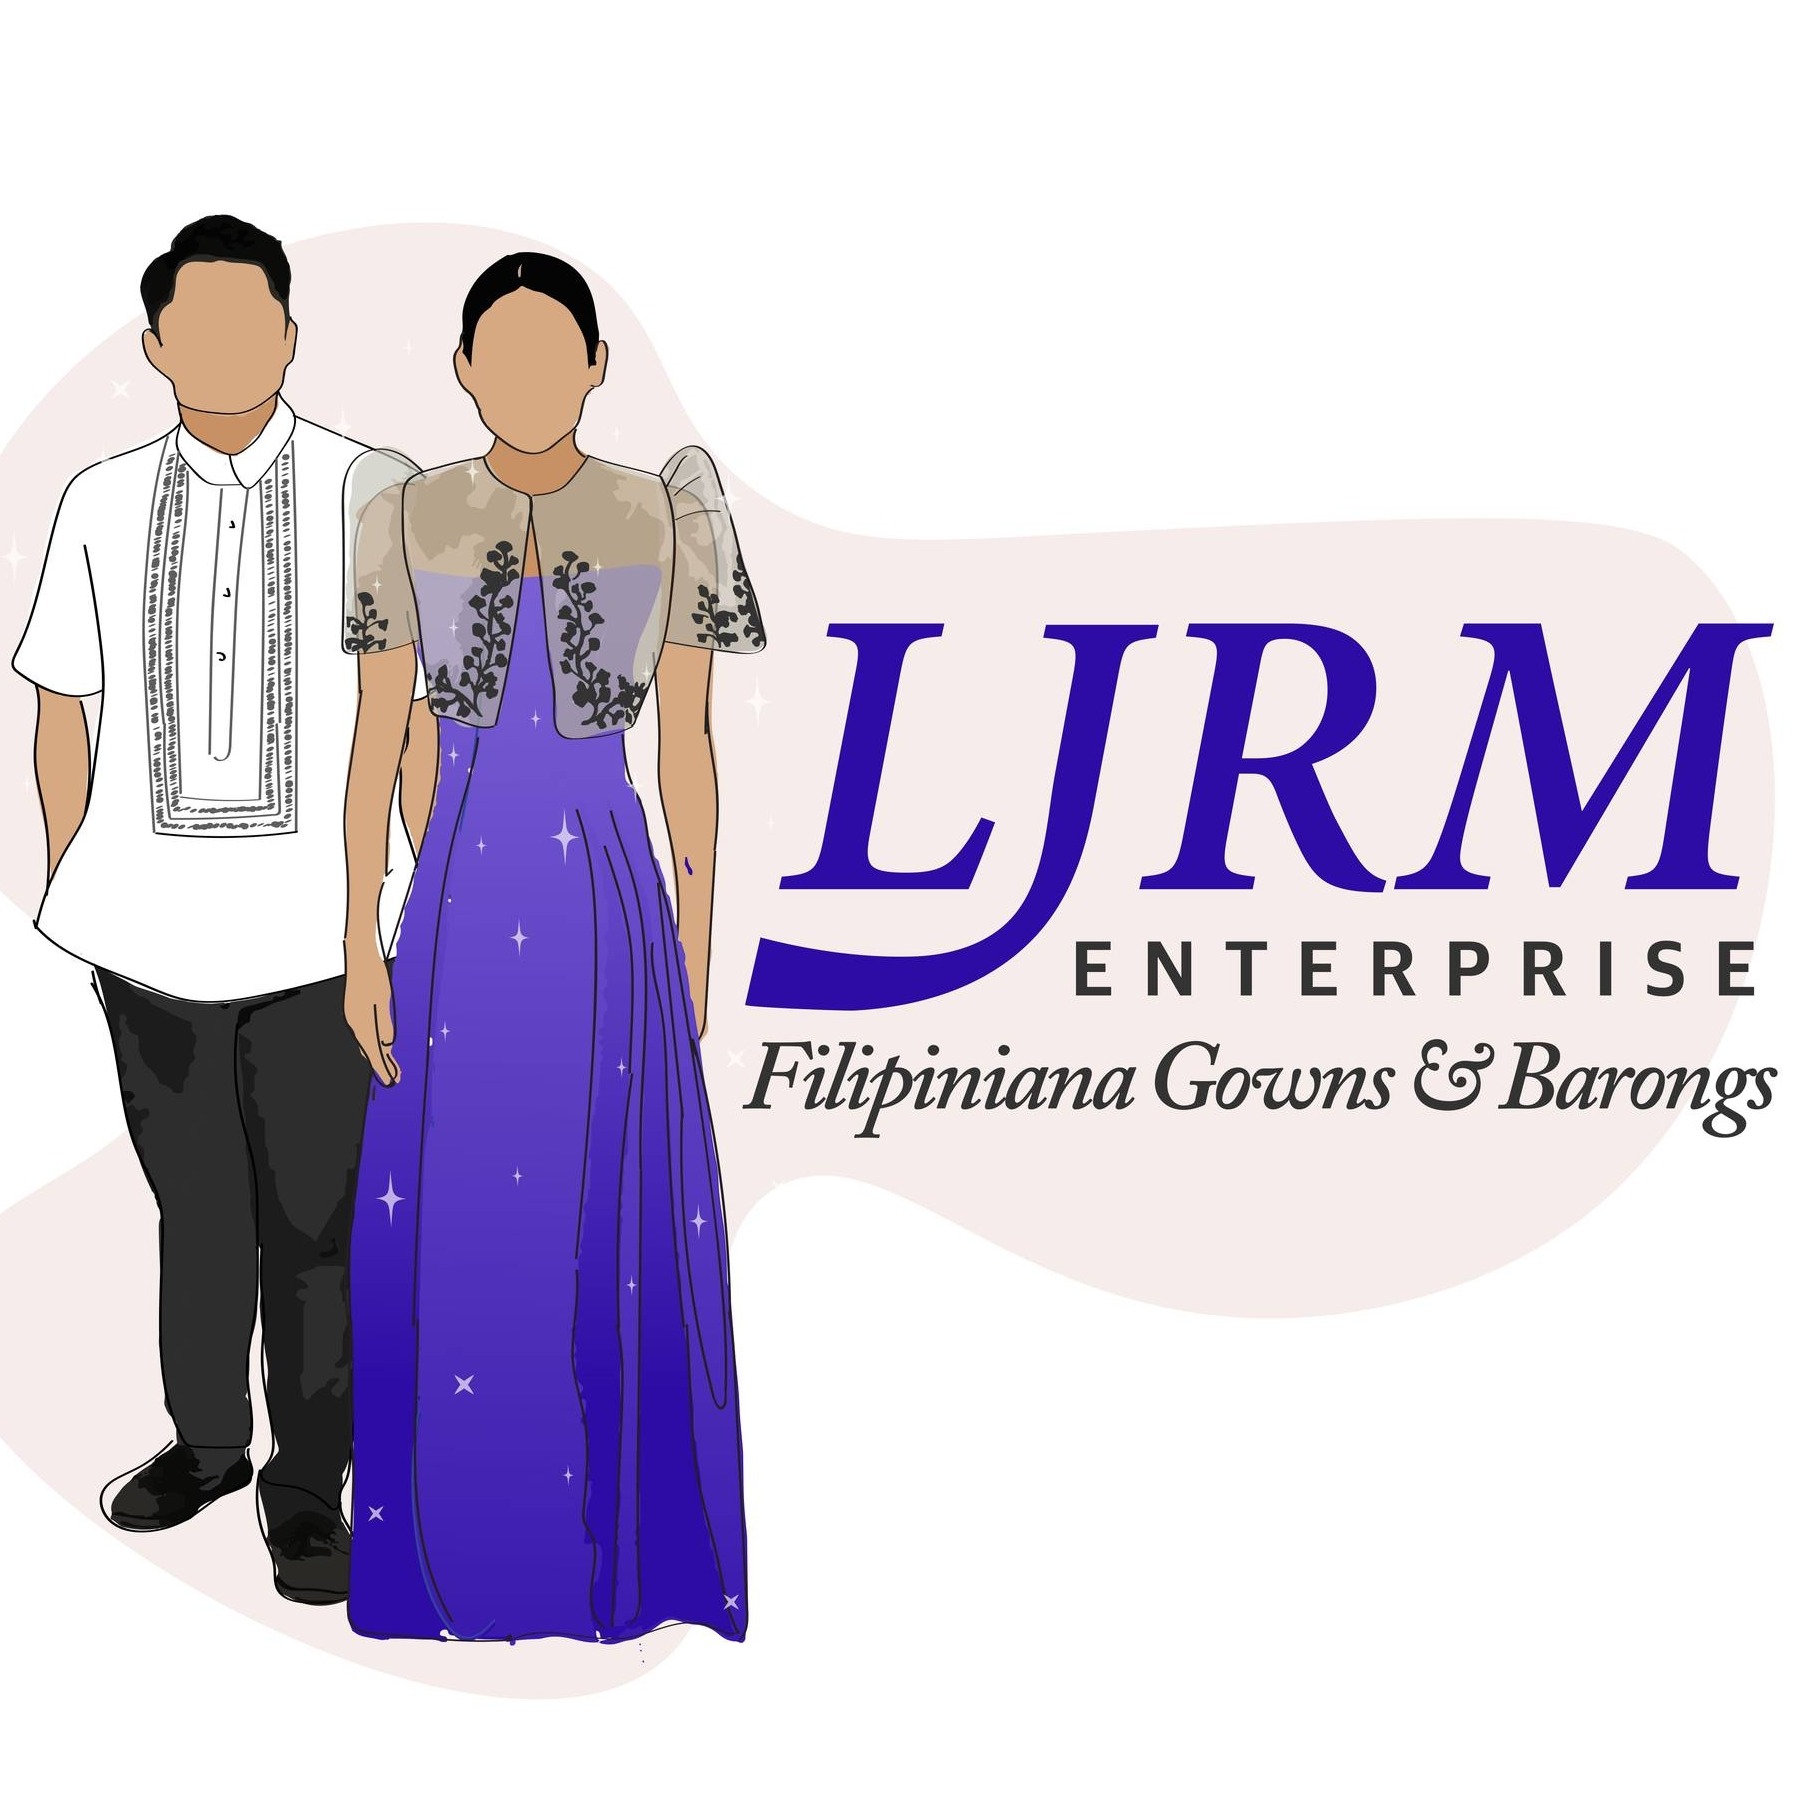 LJRM Enterprise